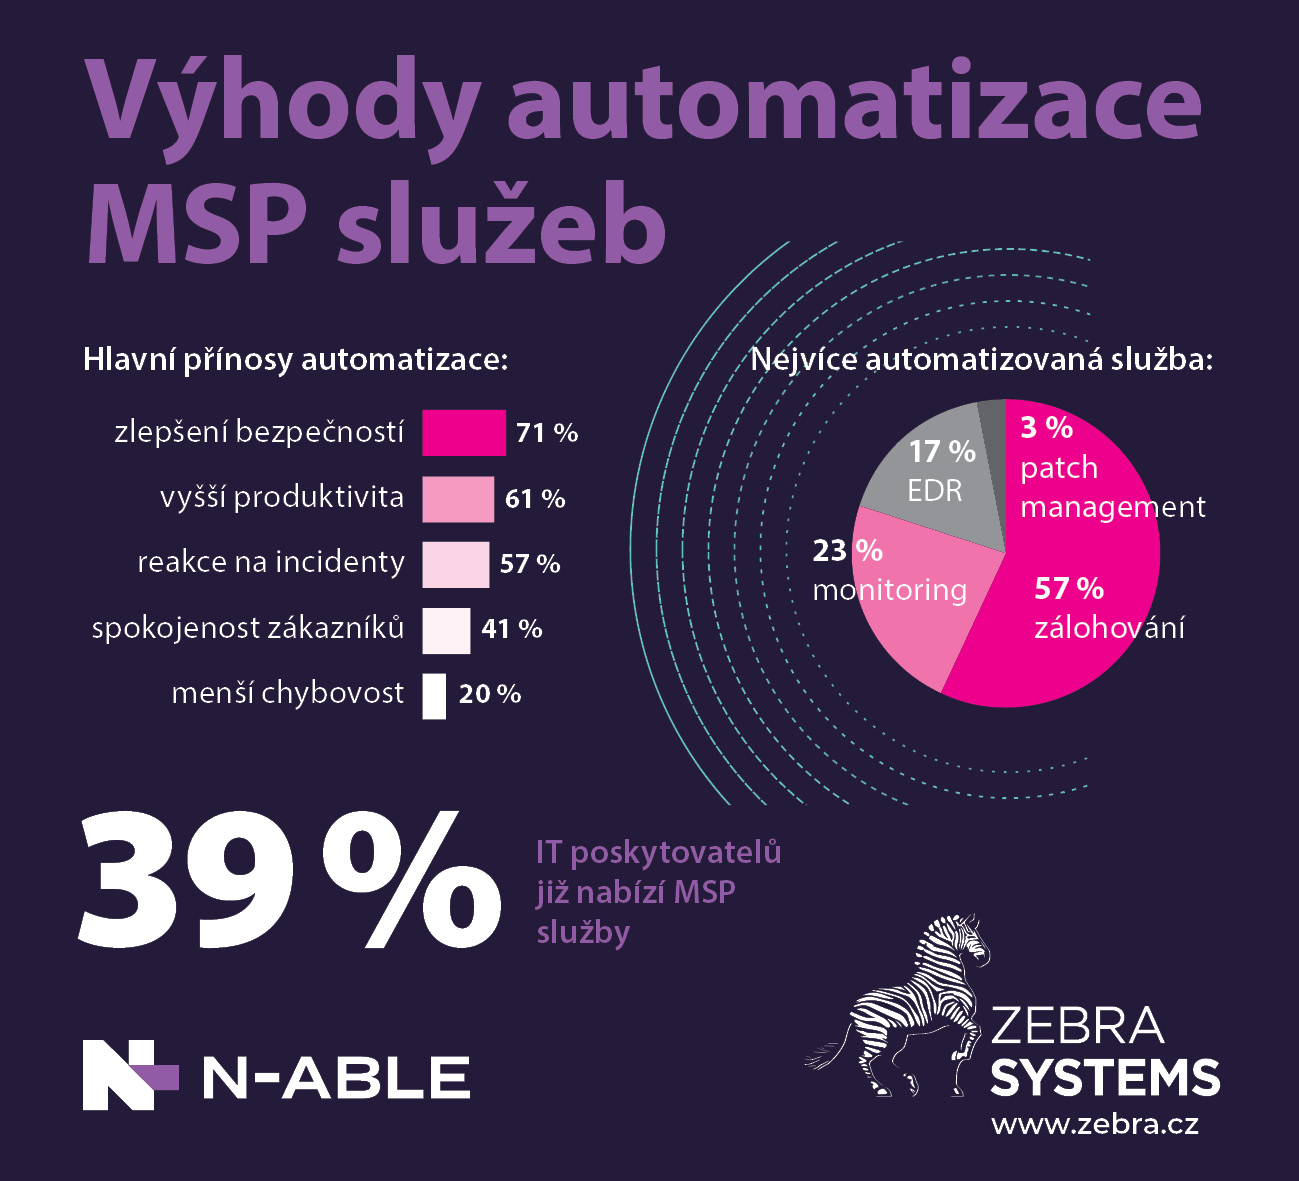 zebra-systems-lokalni-it-prodejci-objevuji-vyhody-automatizace-jiz-39-nabizi-sluzby-msp-ci-mssp